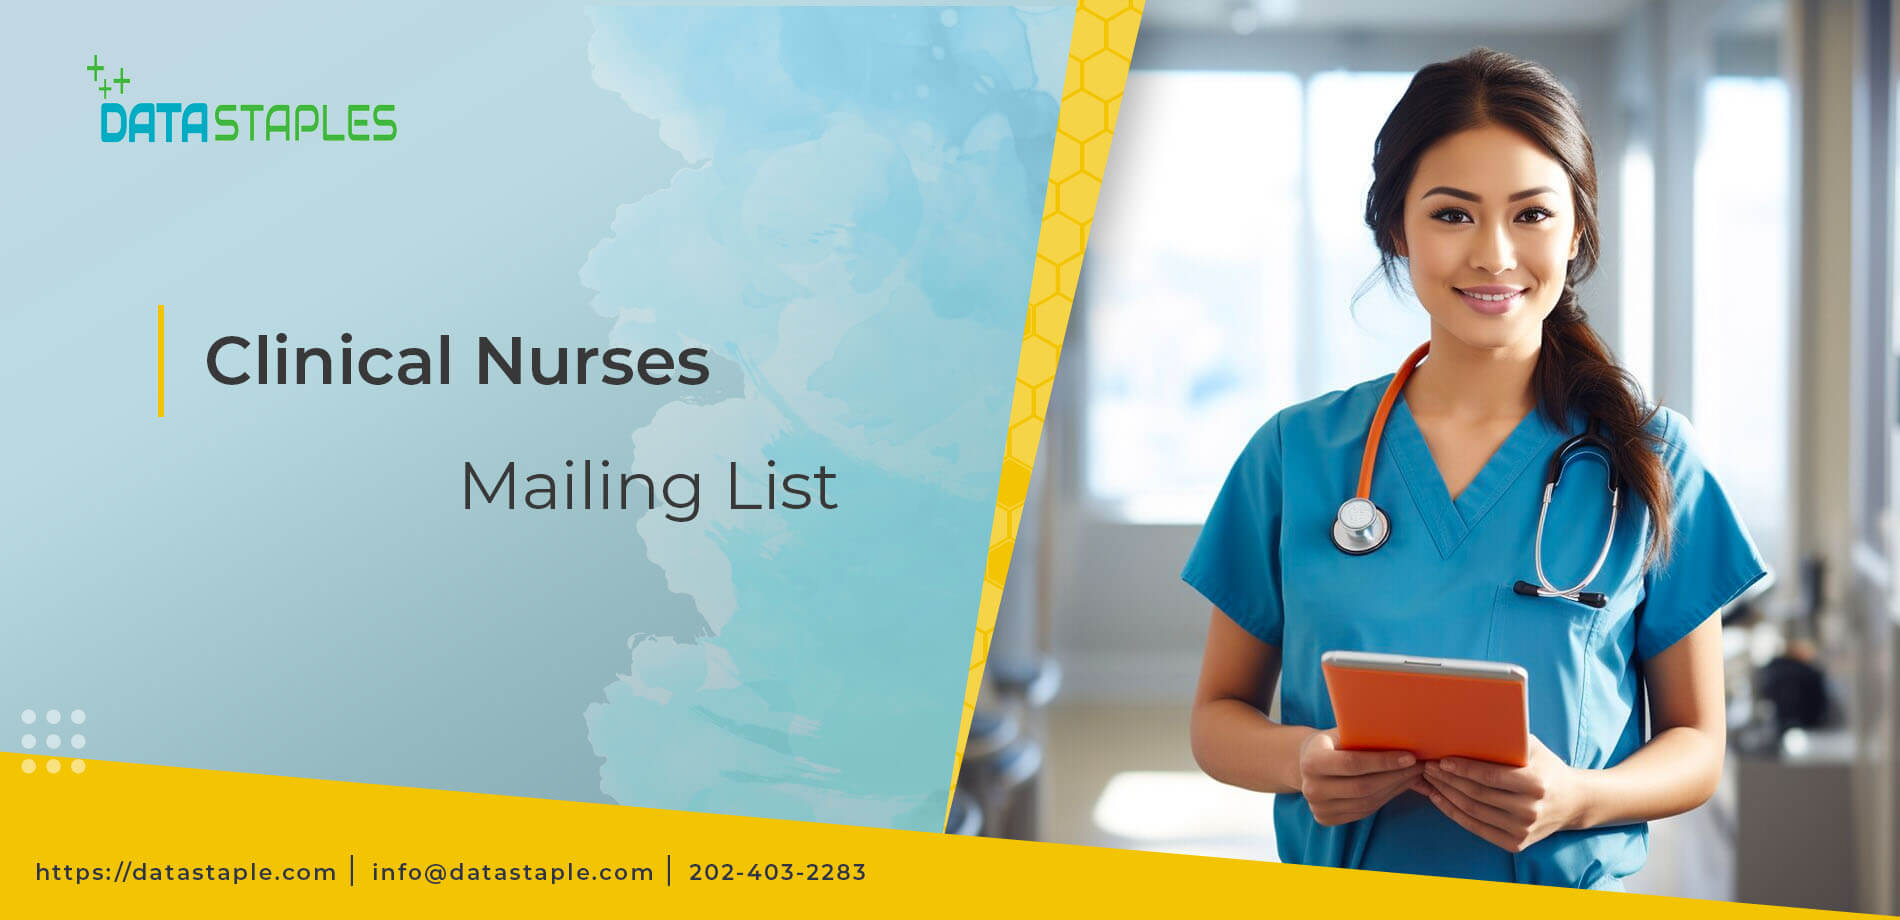 Clinical Nurses Mailing List | DataStaples